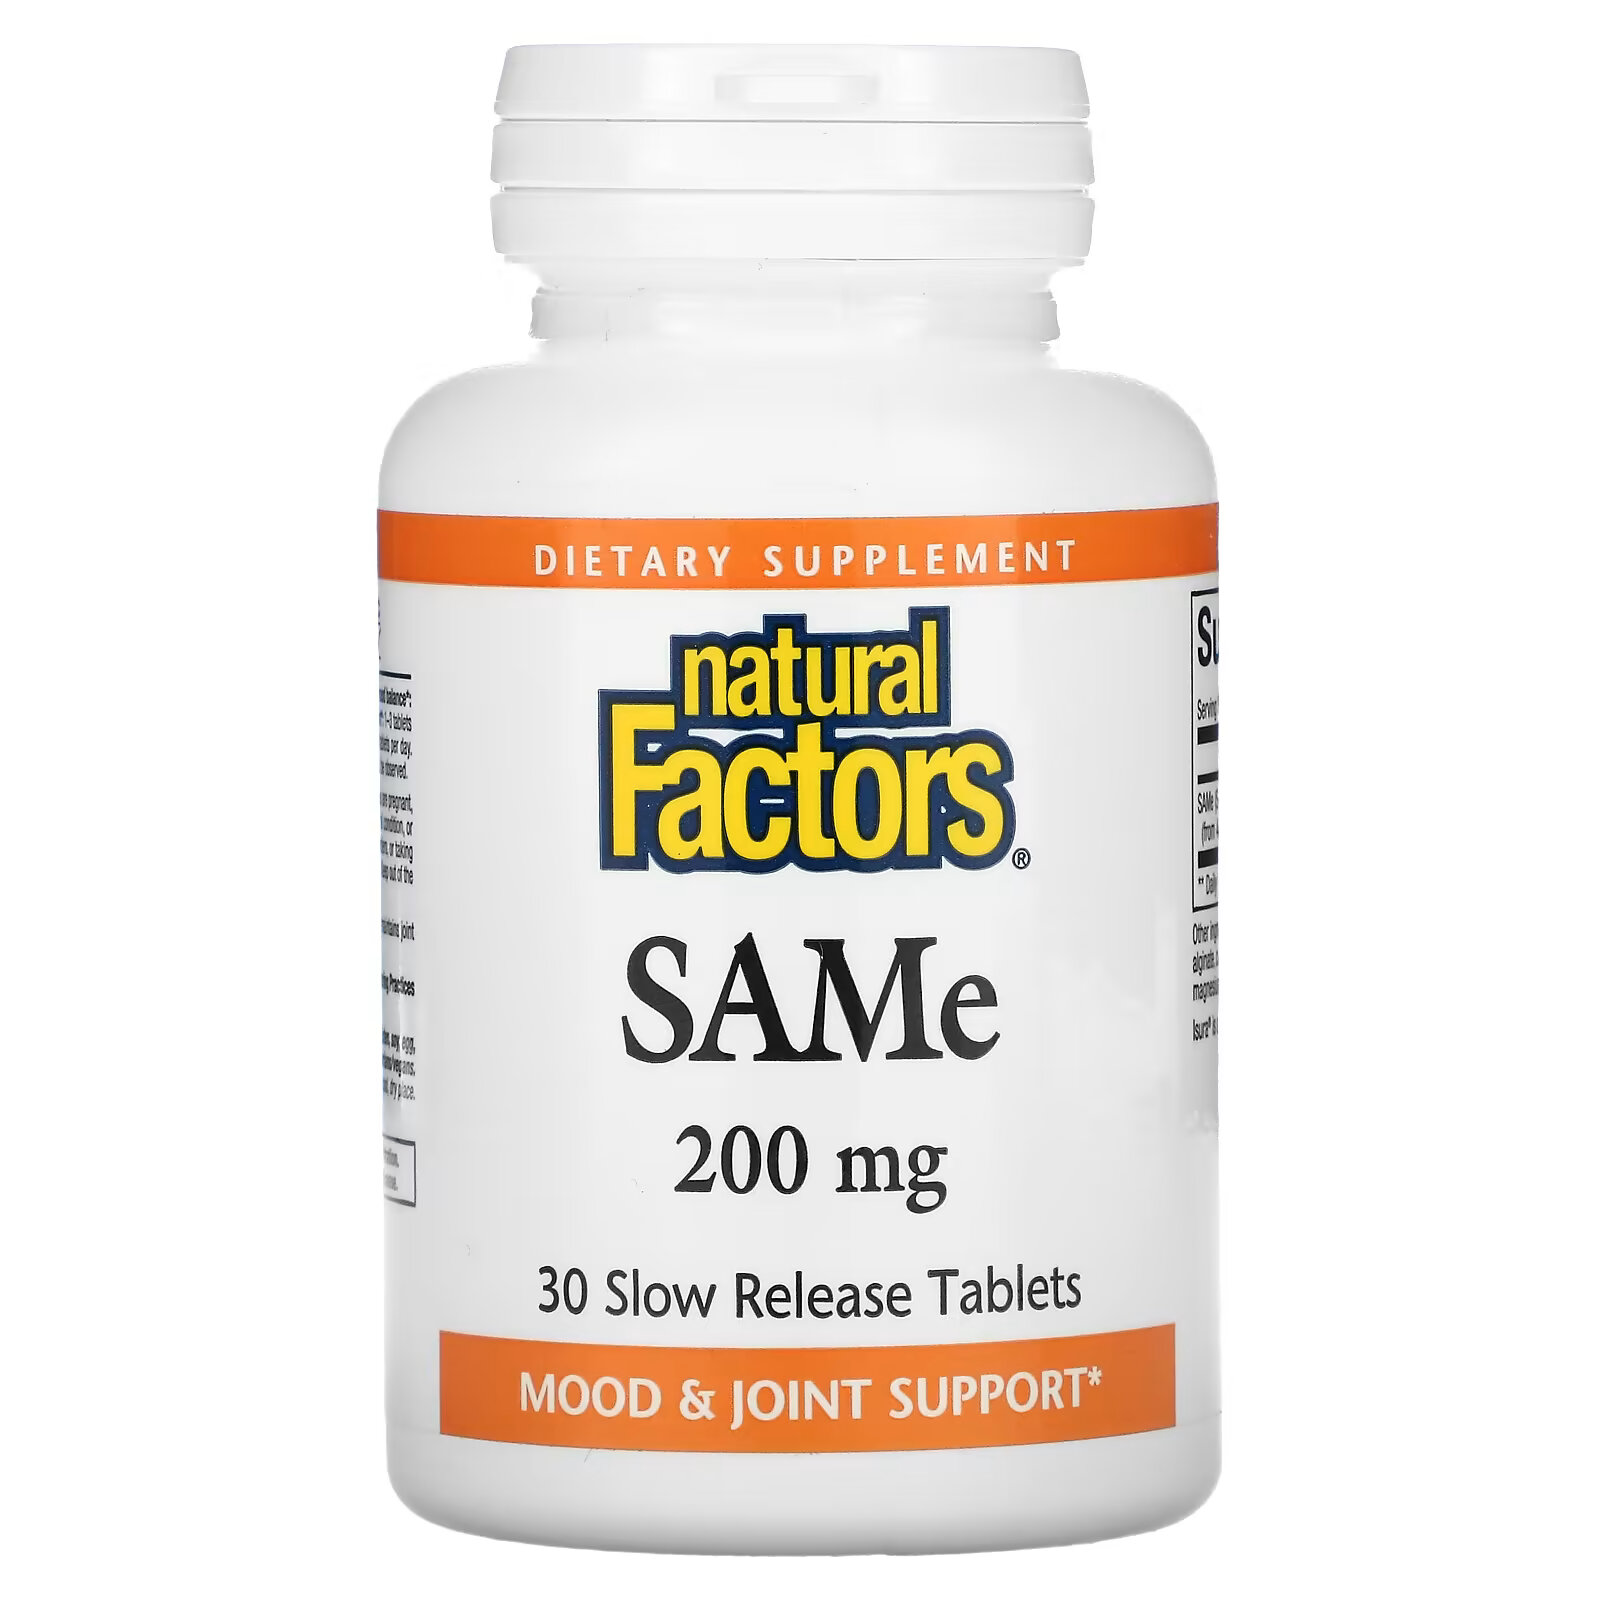 natural factors same дисульфат тозилат 200 мг 30 таблеток с медленным высвобождением Natural Factors, SAMe (дисульфат тозилат), 200 мг, 30 таблеток с медленным высвобождением